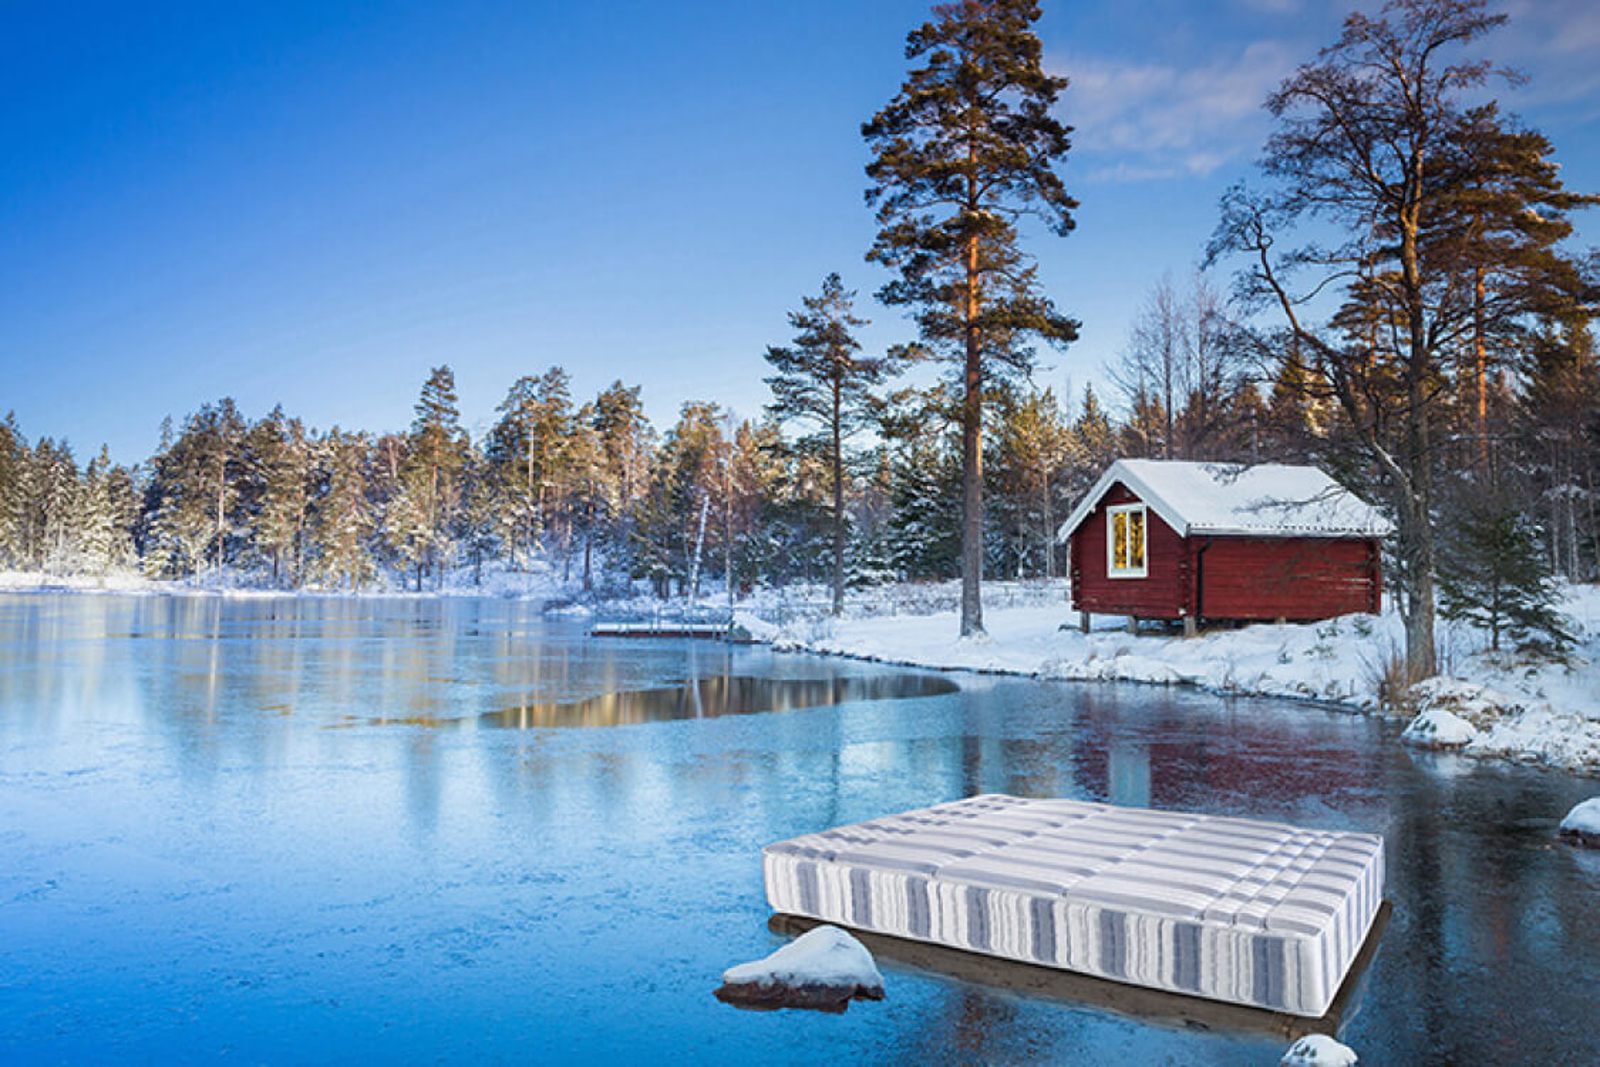 Lapland'ın İki Yakası İsveç ve Finlandiya (Uçaksız)